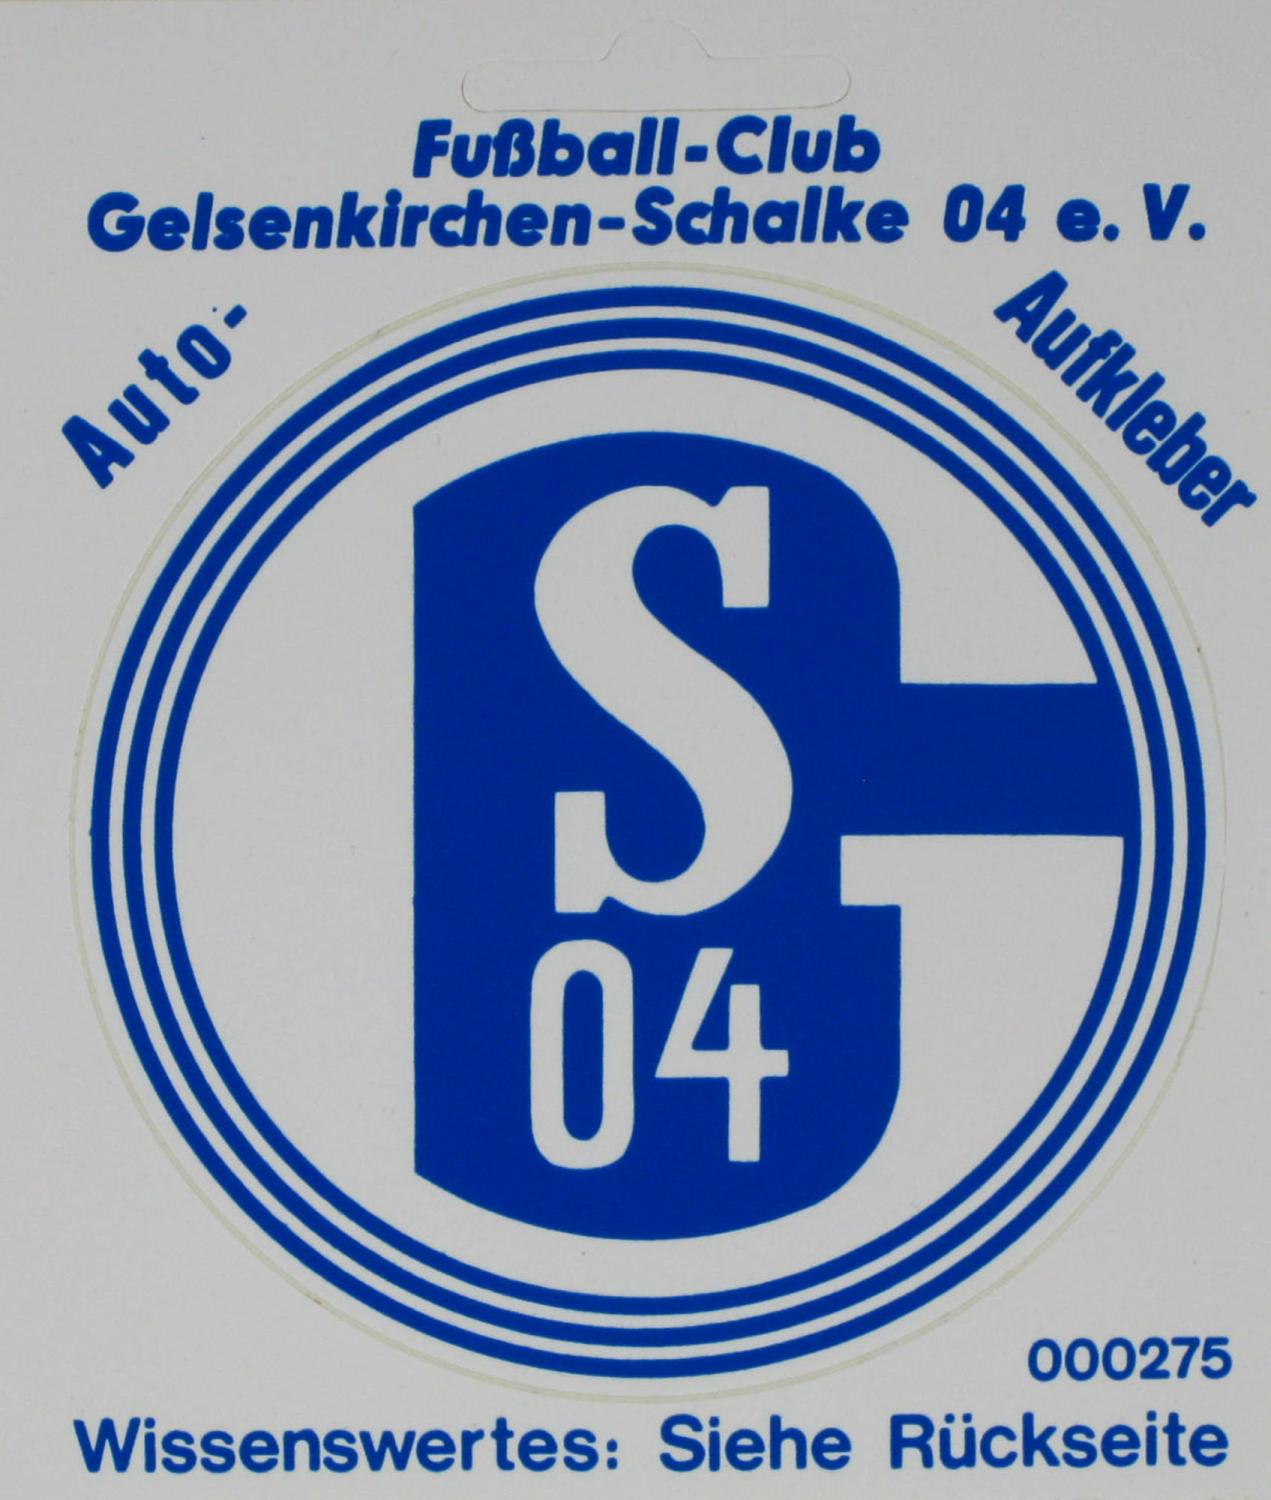 RARITÄT 12 x 10 cm   Auto-Aufkleber Schalke 04 TOP 